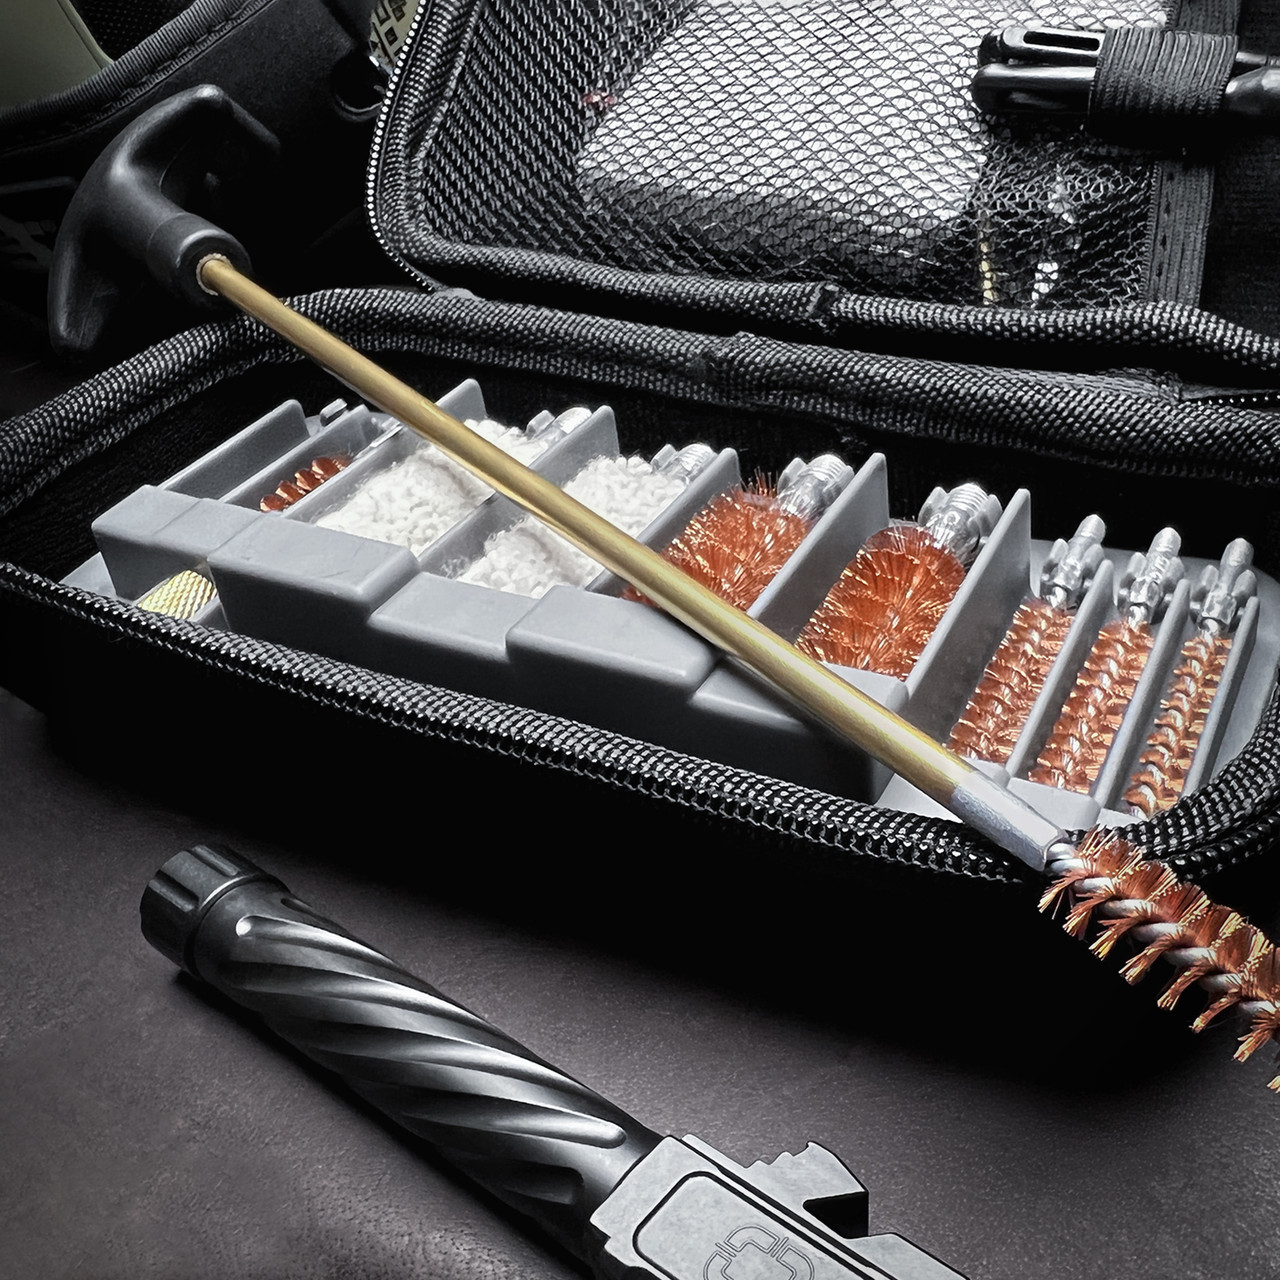 GRITR Shotgun Cleaning Rod Magnetic Shell Retriever Tool w Shotgun Choke  Tube 3 Pack Set for 12 Gauge Beretta Benelli Mobil Multi Caliber Gun  Cleaning Kit